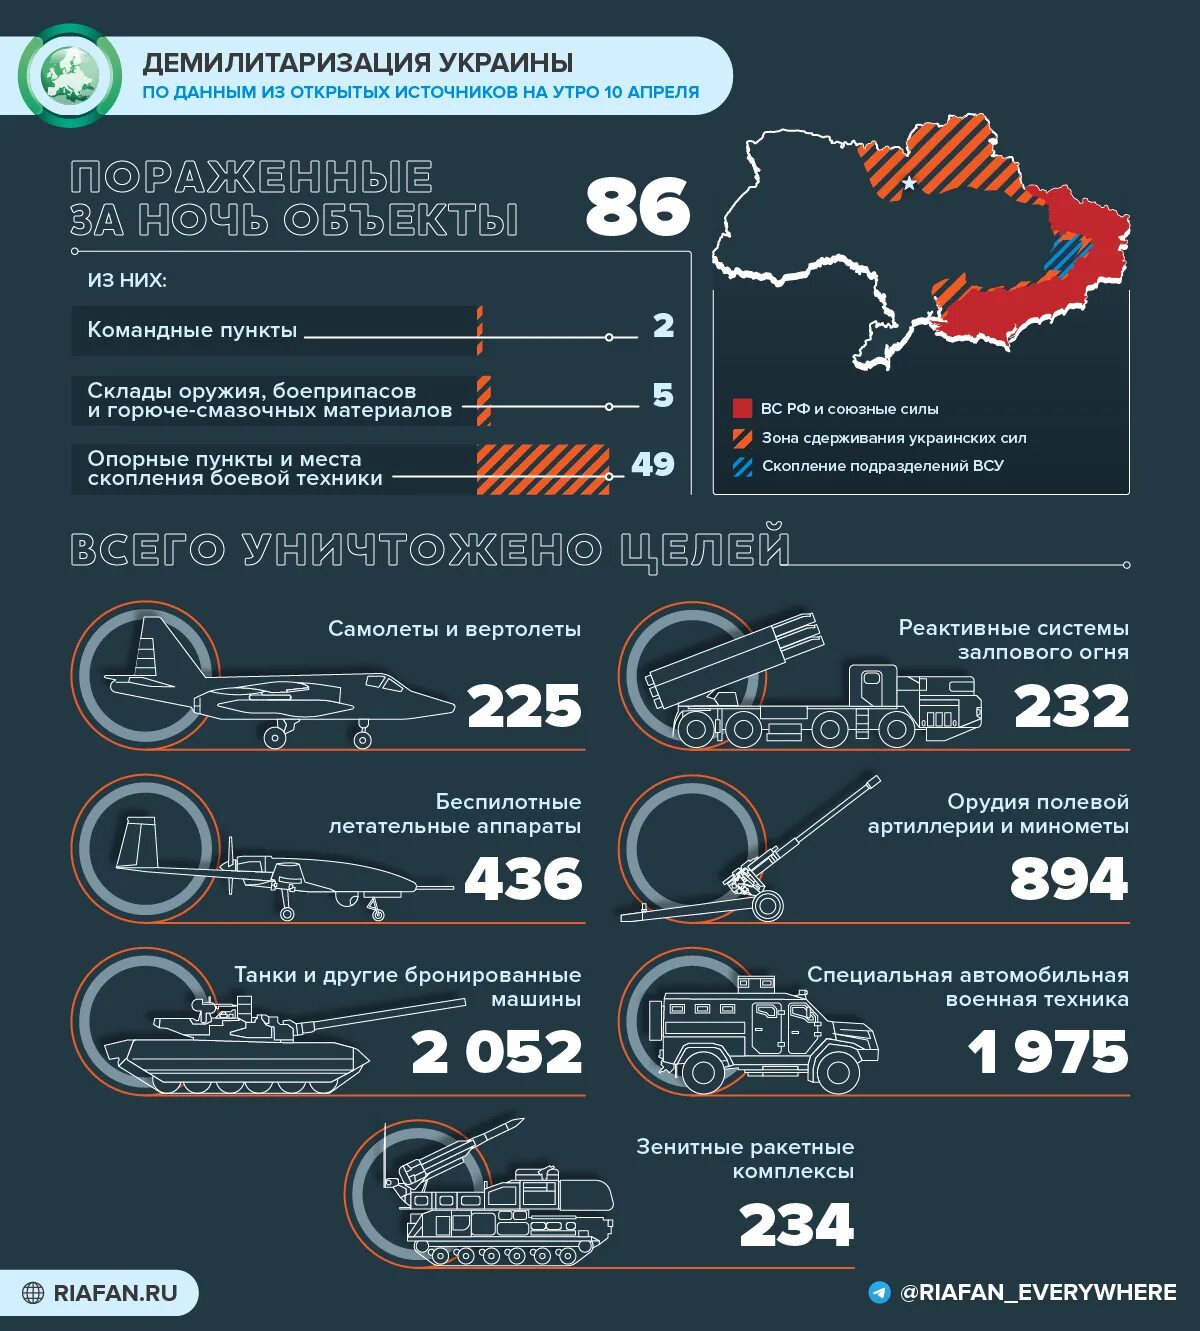 Поставки оружия на Украину инфографика. Потери Украины инфографика. Потери украинских войск 2022 инфографика. 24 июля через